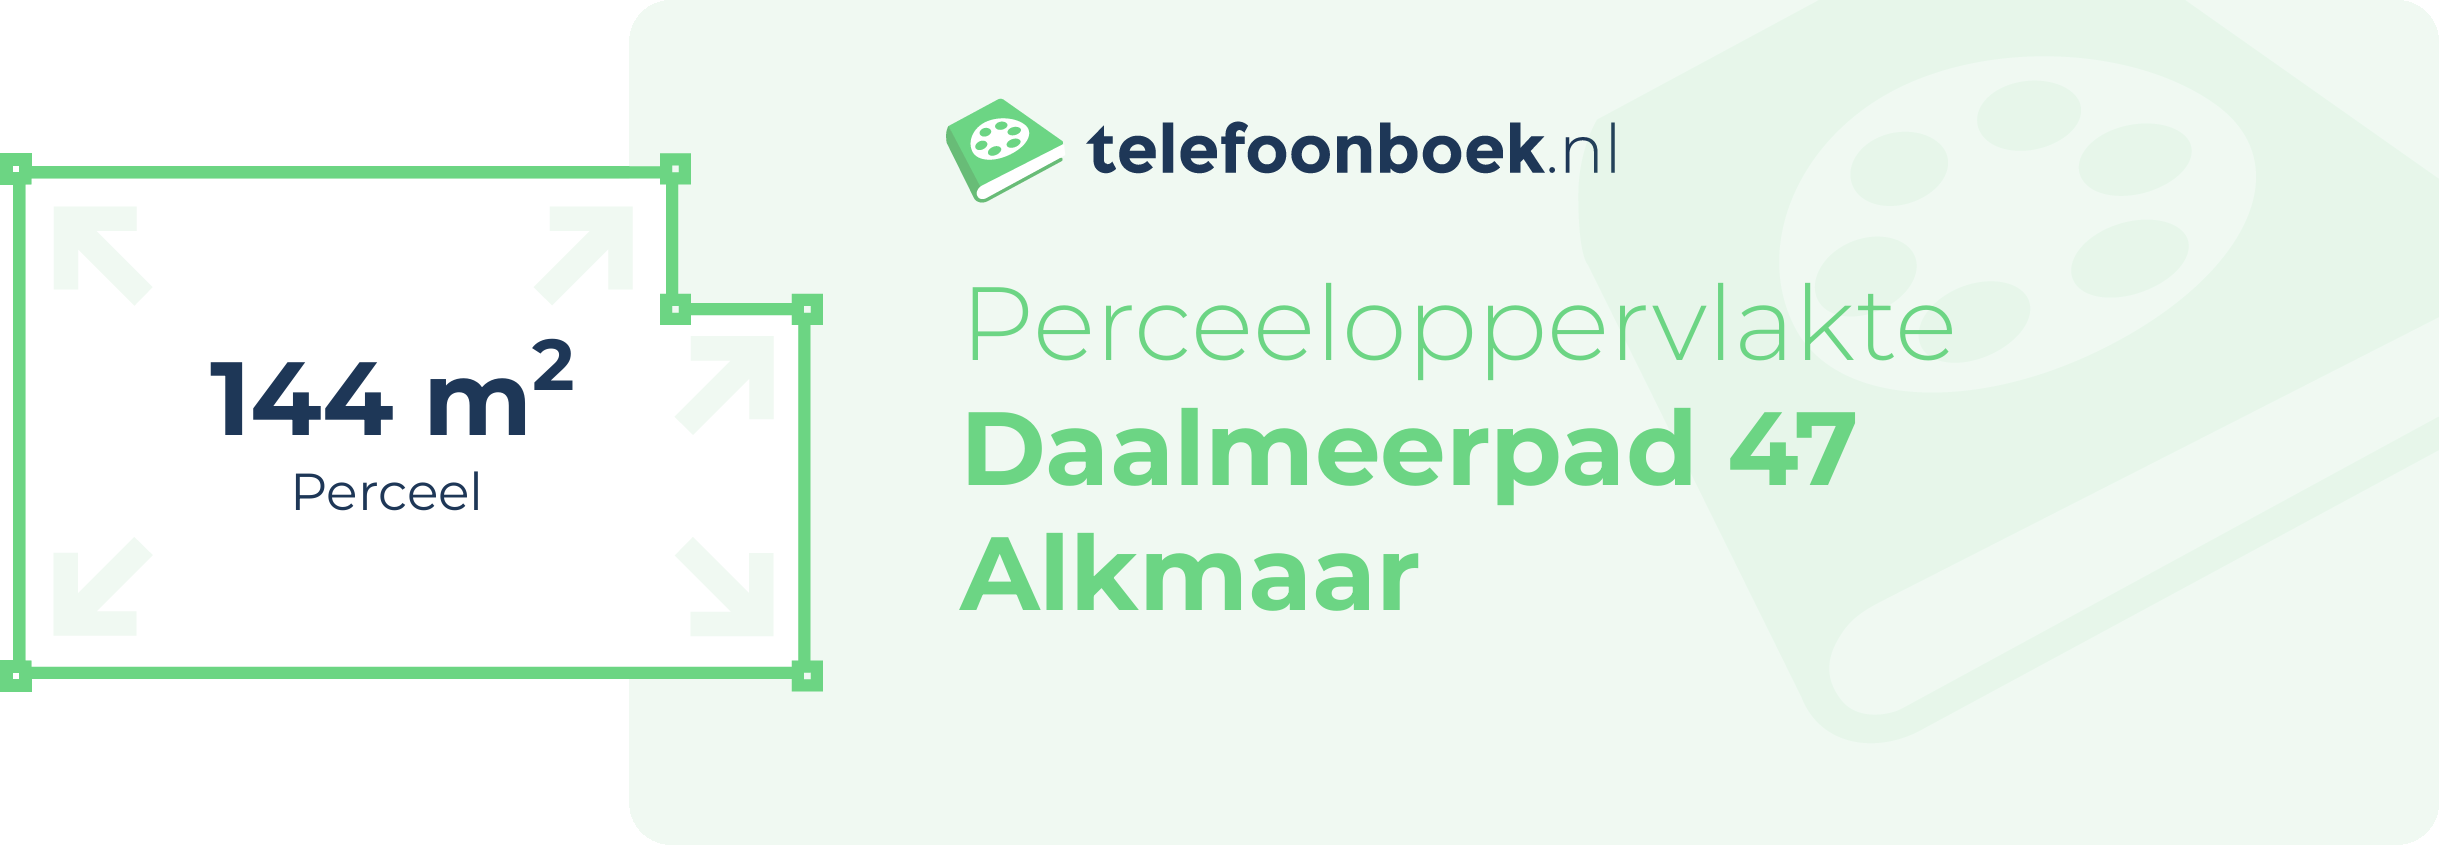 Perceeloppervlakte Daalmeerpad 47 Alkmaar